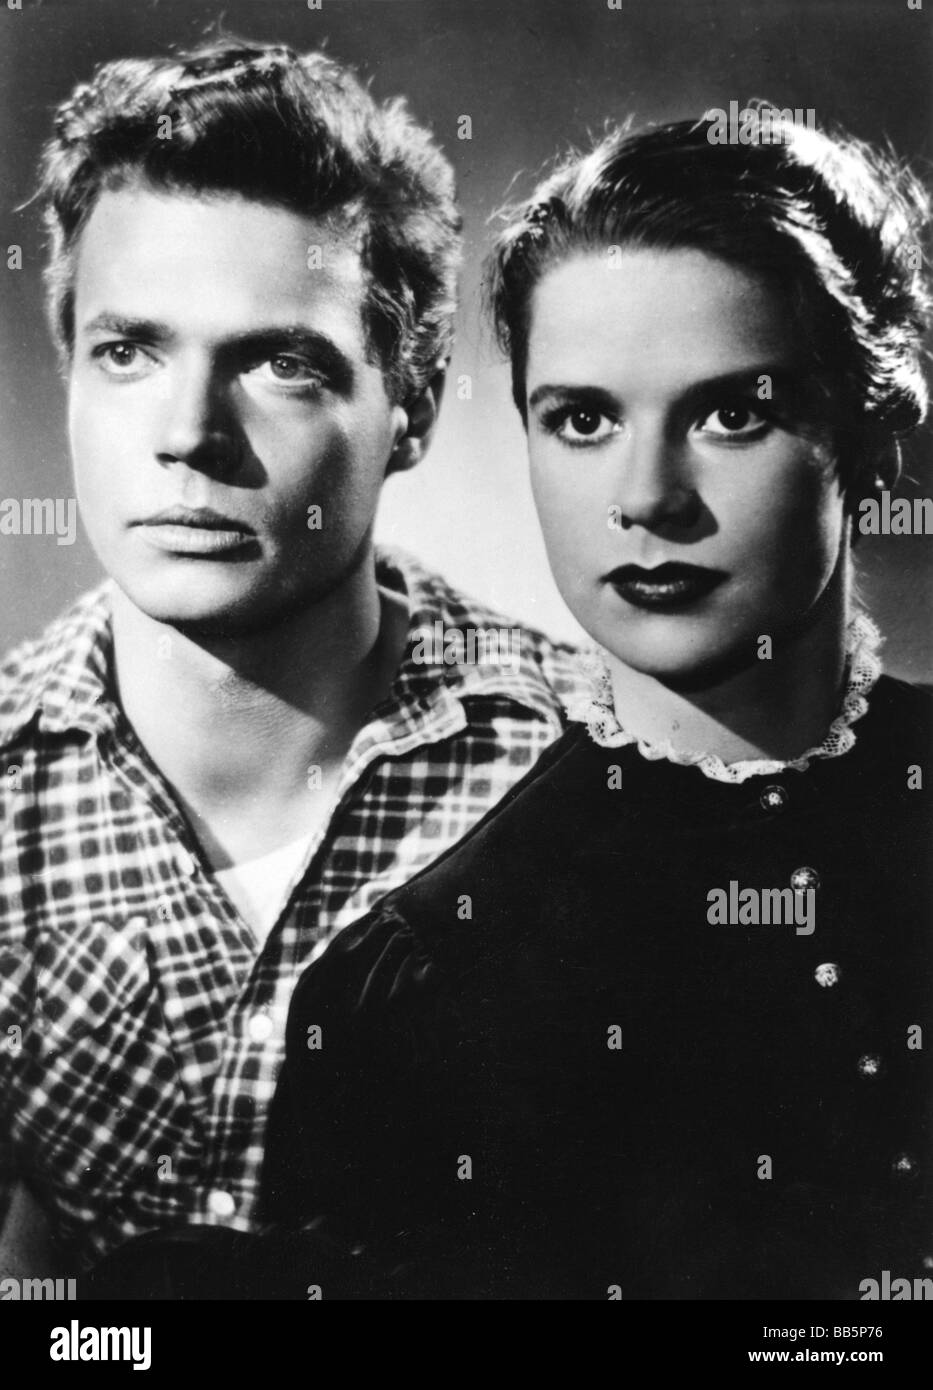 movie, 'The Swap' (Der Weibertausch), DEU 1952, director: Karl Anton, scene with: Karlheinz Böhm, Carola Höhn, Third-Party-Permissions-Neccessary Stock Photo